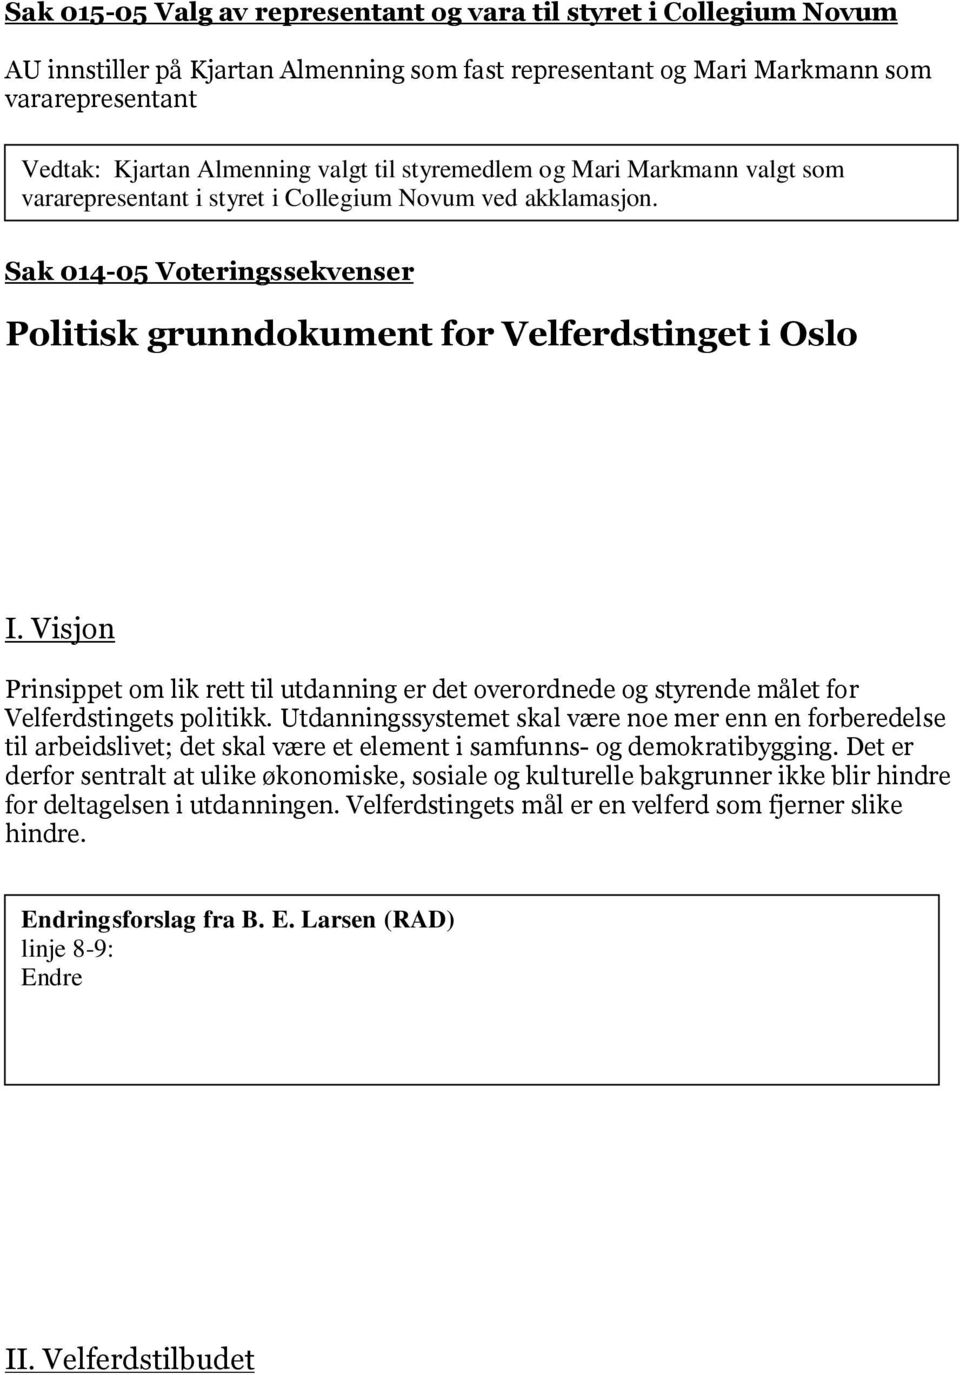 Sak 014-05 Voteringssekvenser Politisk grunndokument for Velferdstinget i Oslo Endringsforslag fra B. E. Larsen (RAD) Linje 1: Endre grunndokument til plattform. I.